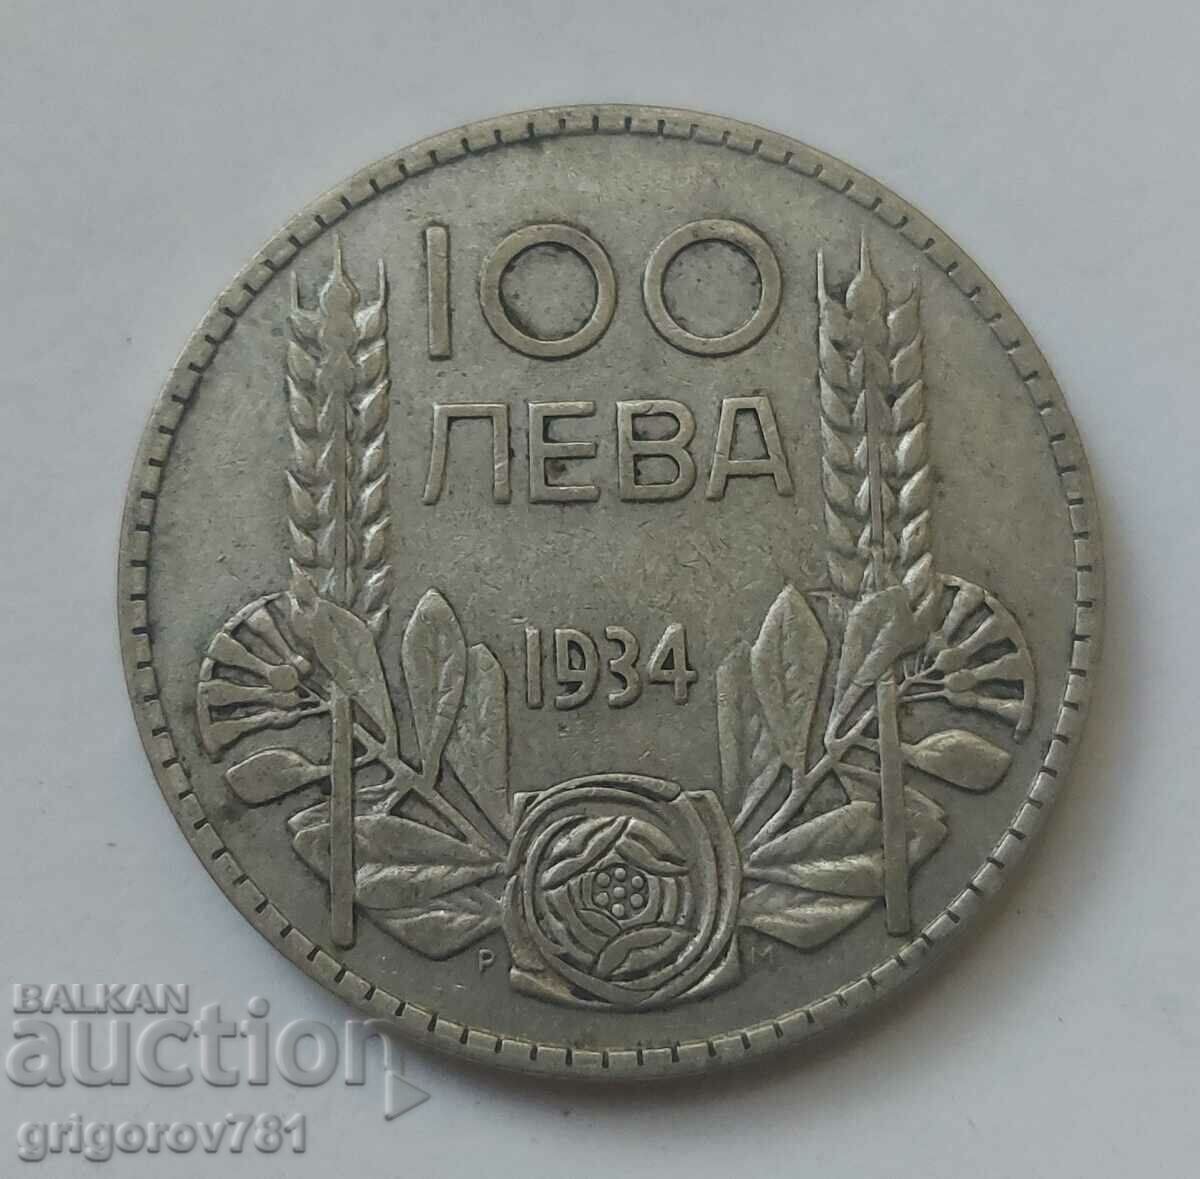 Ασήμι 100 λέβα Βουλγαρία 1934 - ασημένιο νόμισμα #51